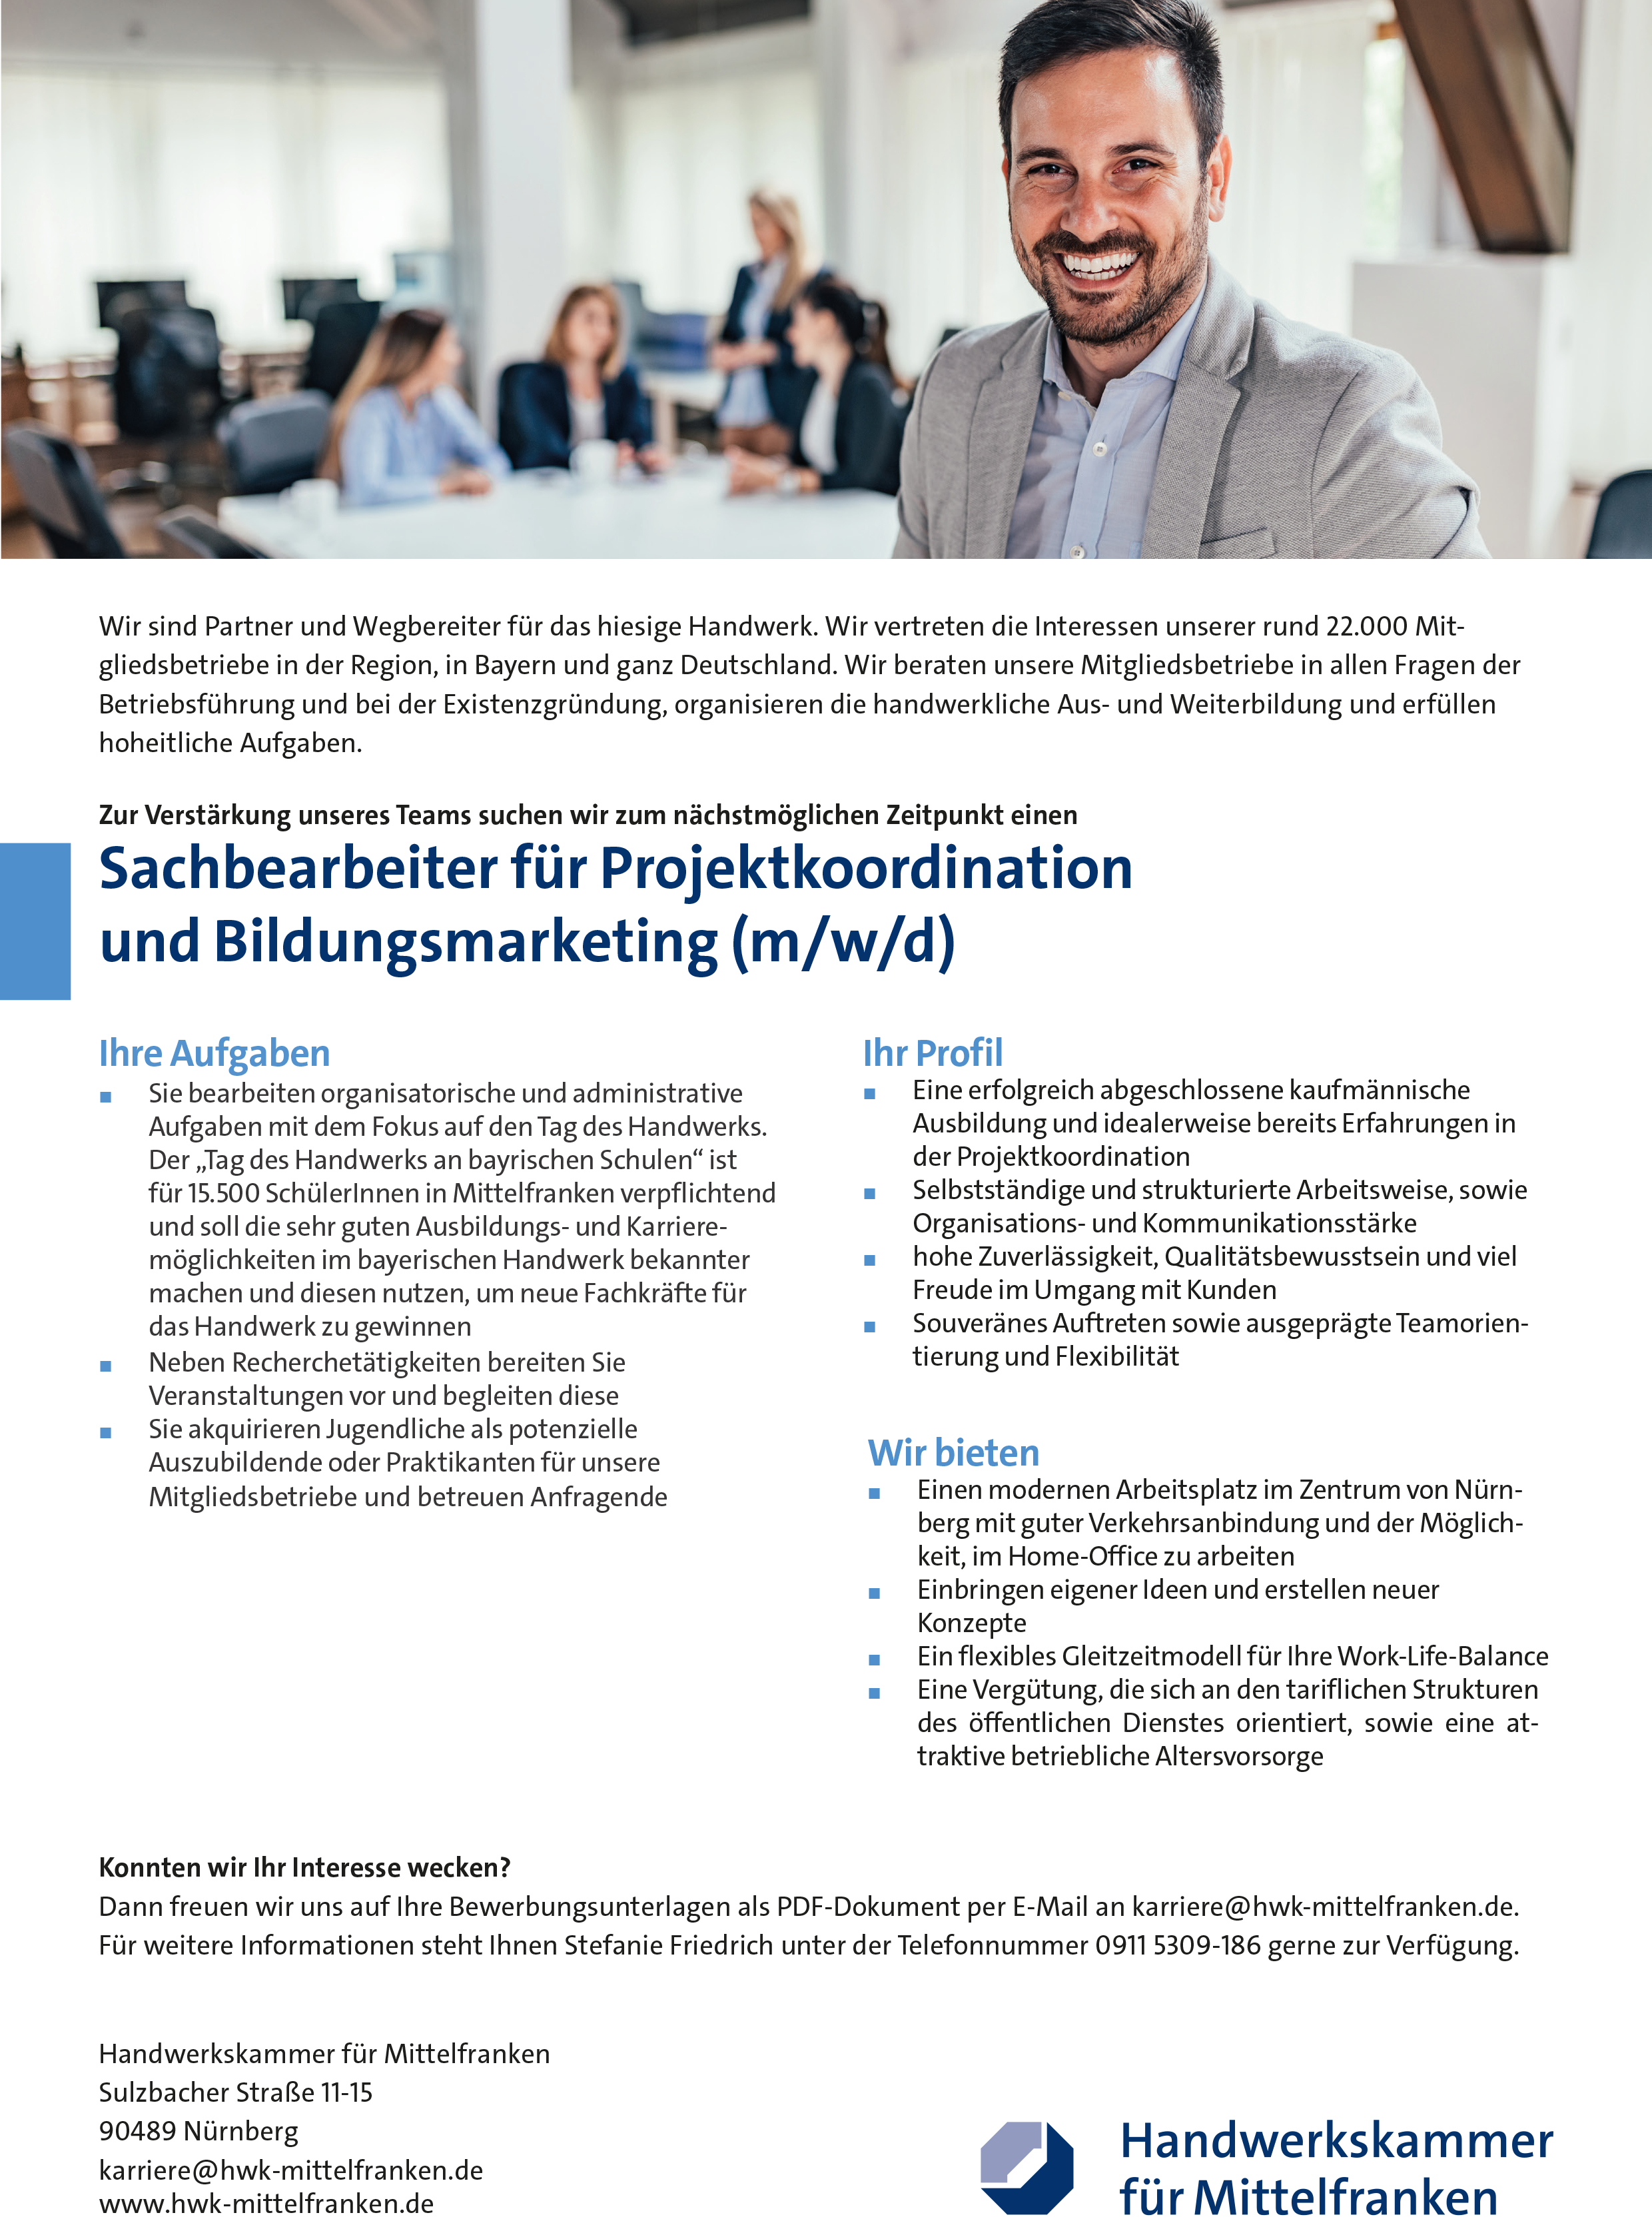 Sachbearbeiter/in für Projektkoordination und Bildungsmarketing HWK Nürnberg stellencomapss.de